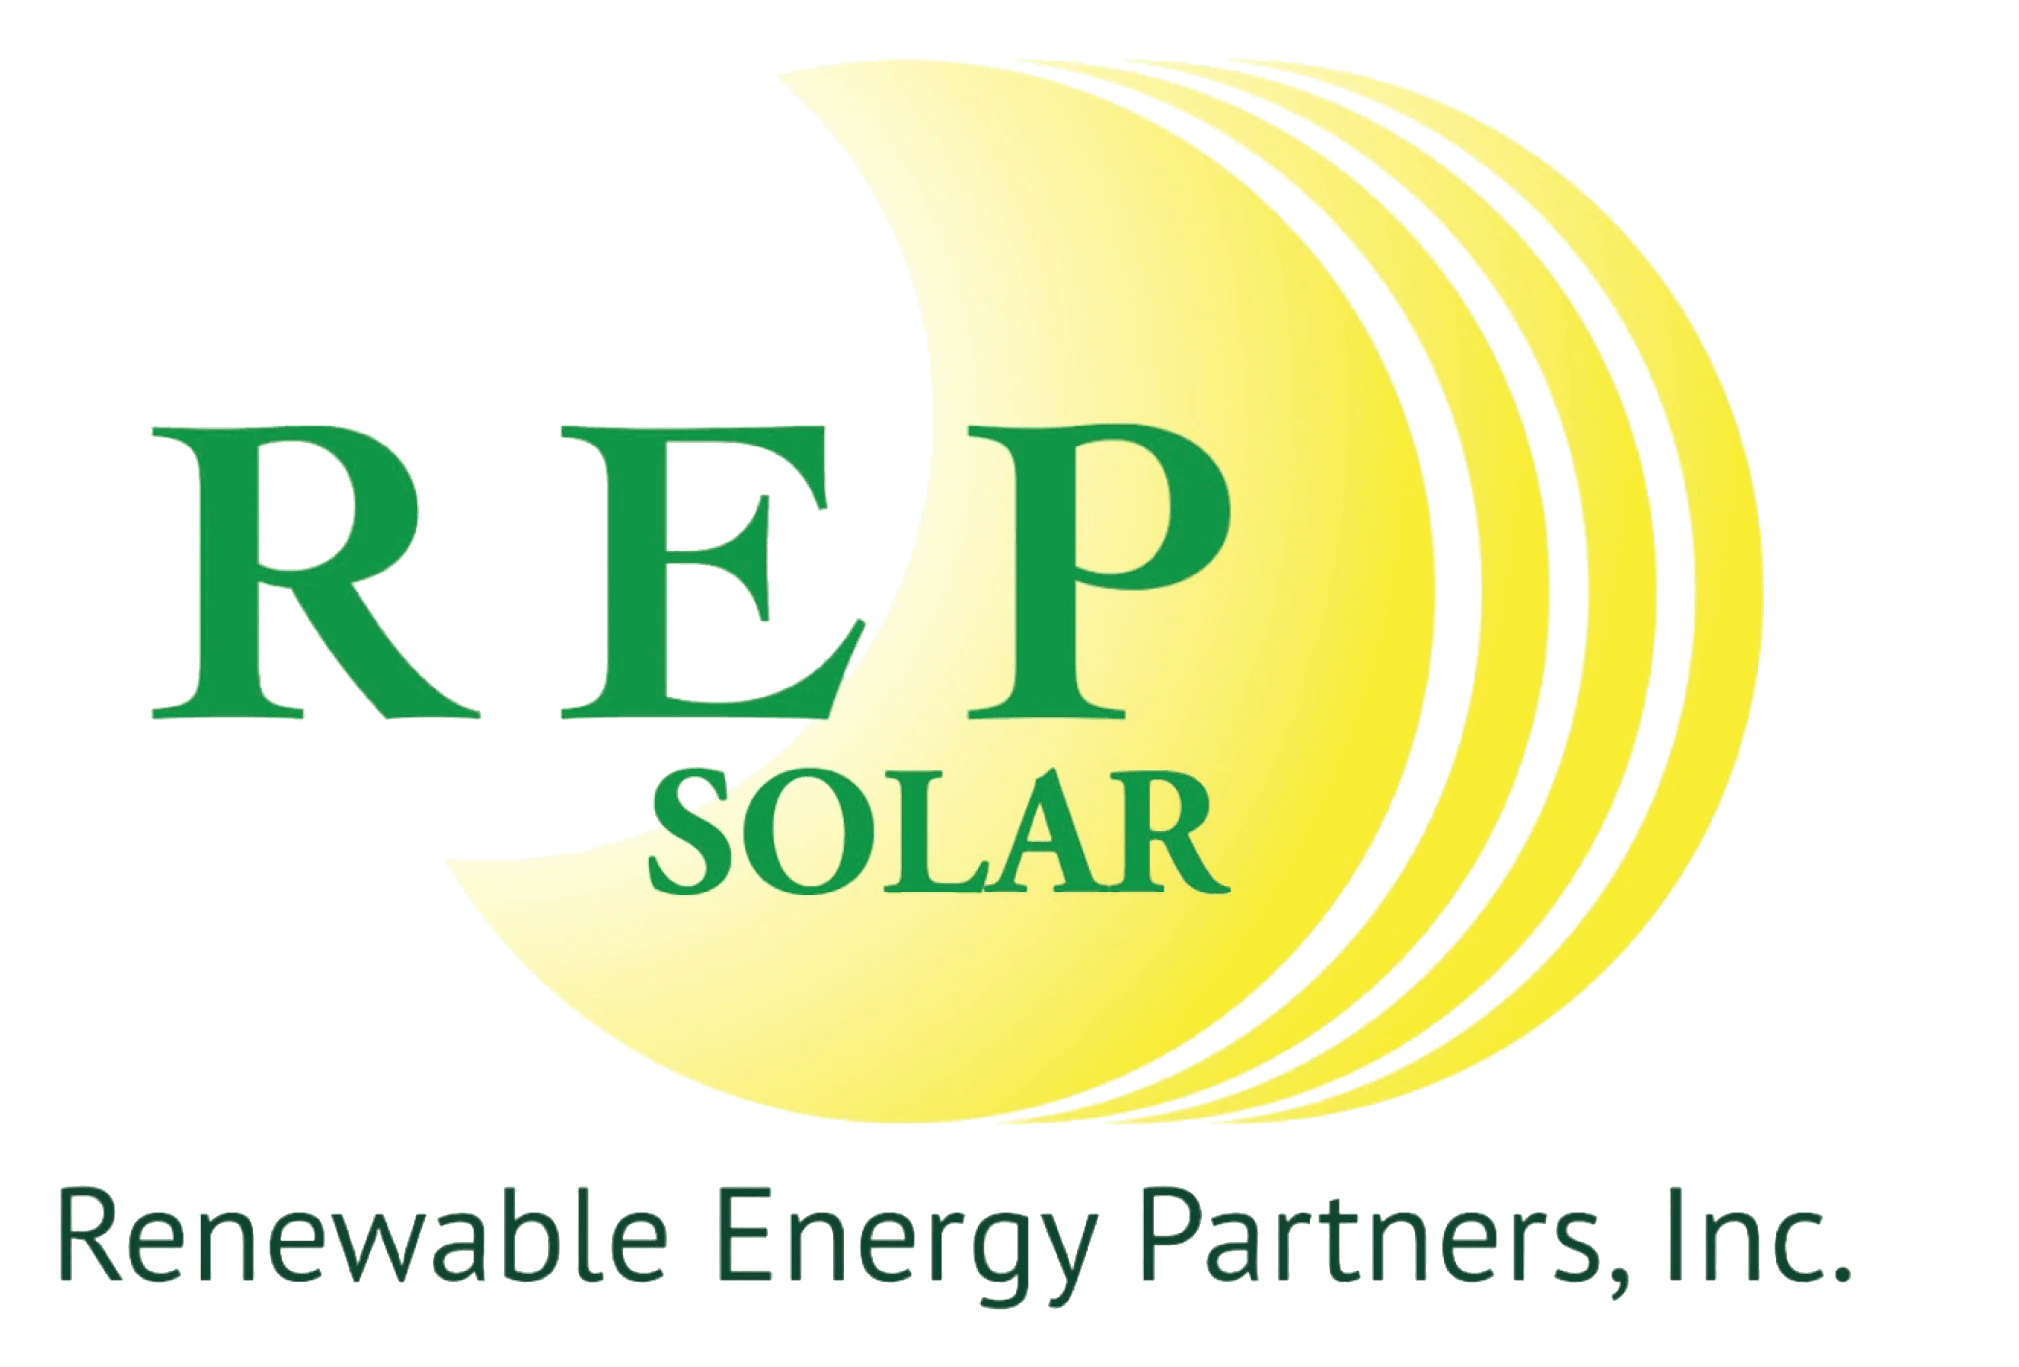 REP Solar Logo